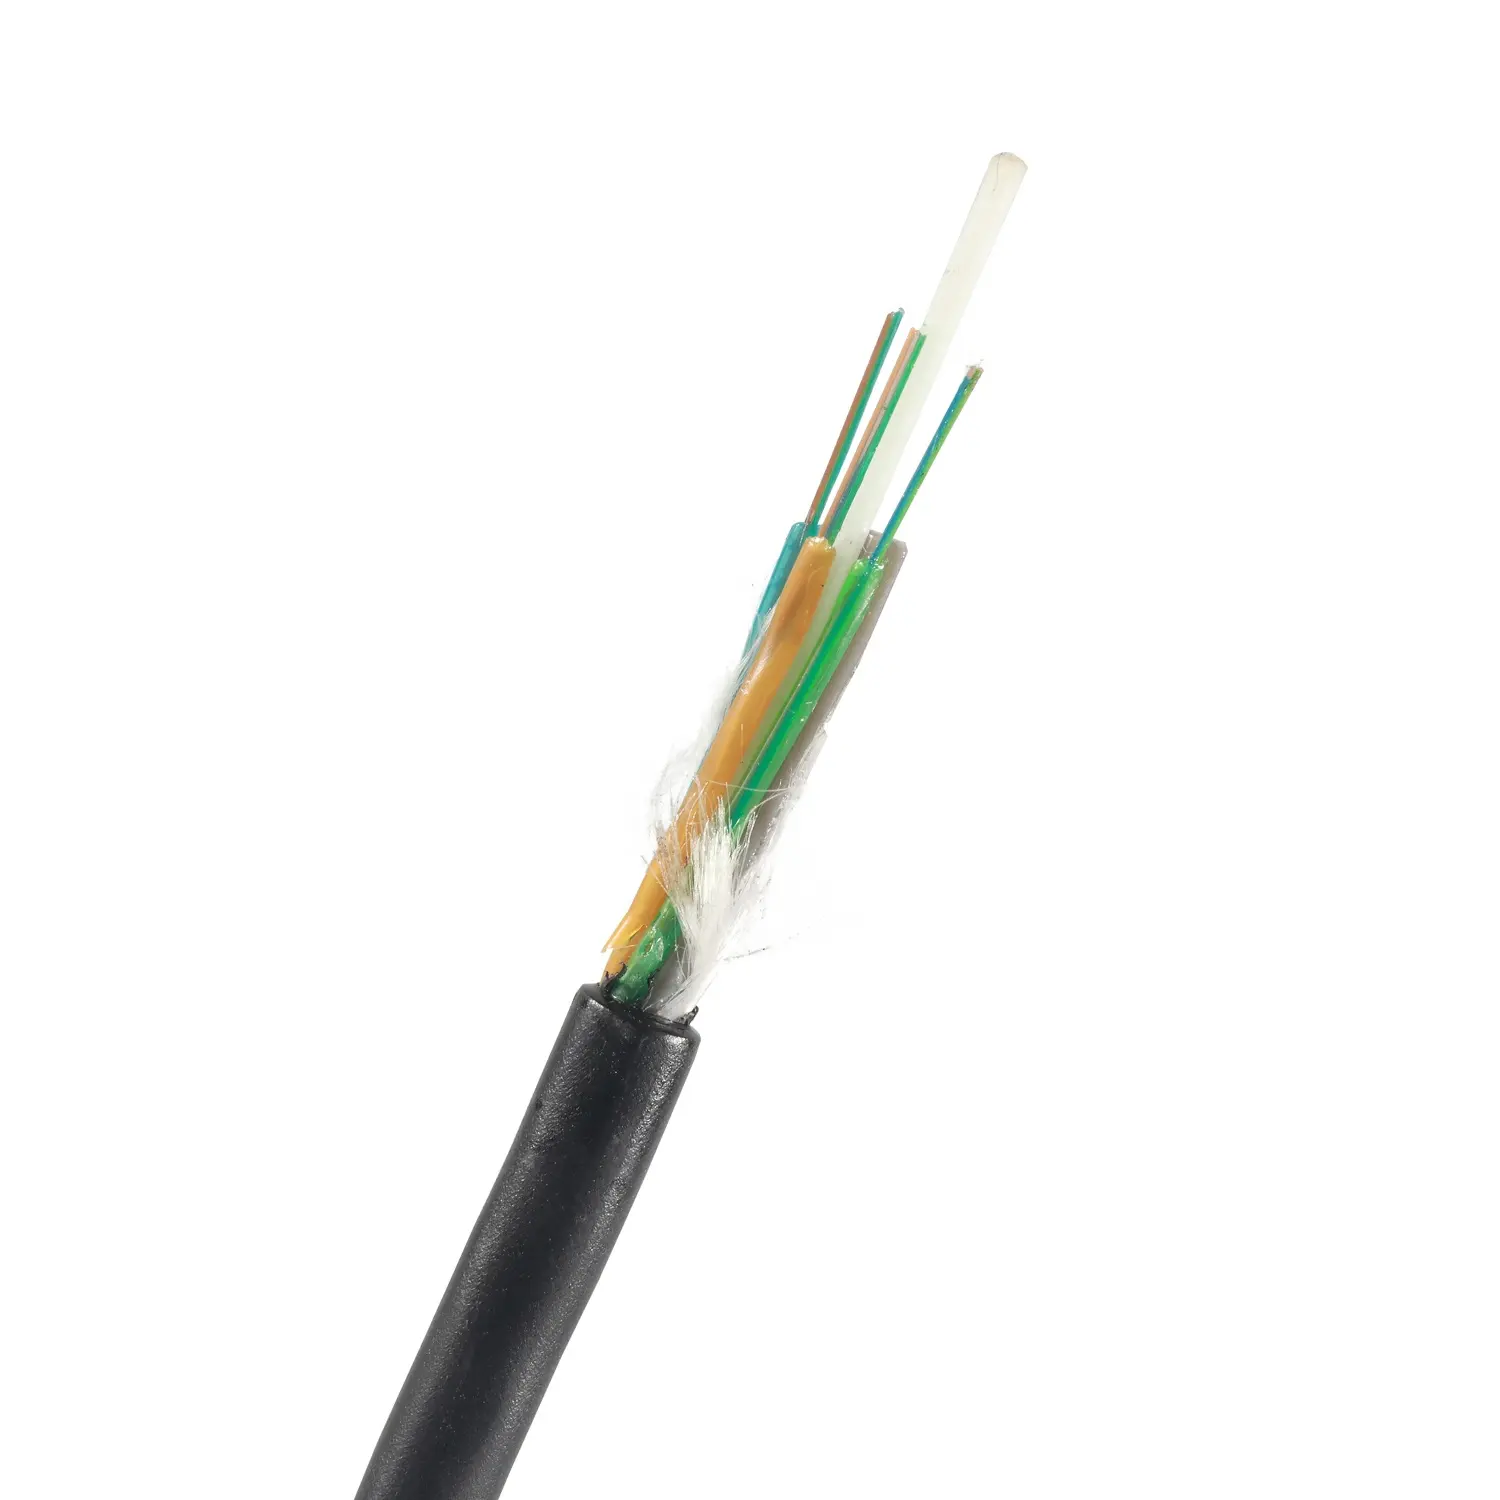 GYFTY 12/24/36/48 core di comunicazione cavo in fibra ottica con 100% fabbrica originale